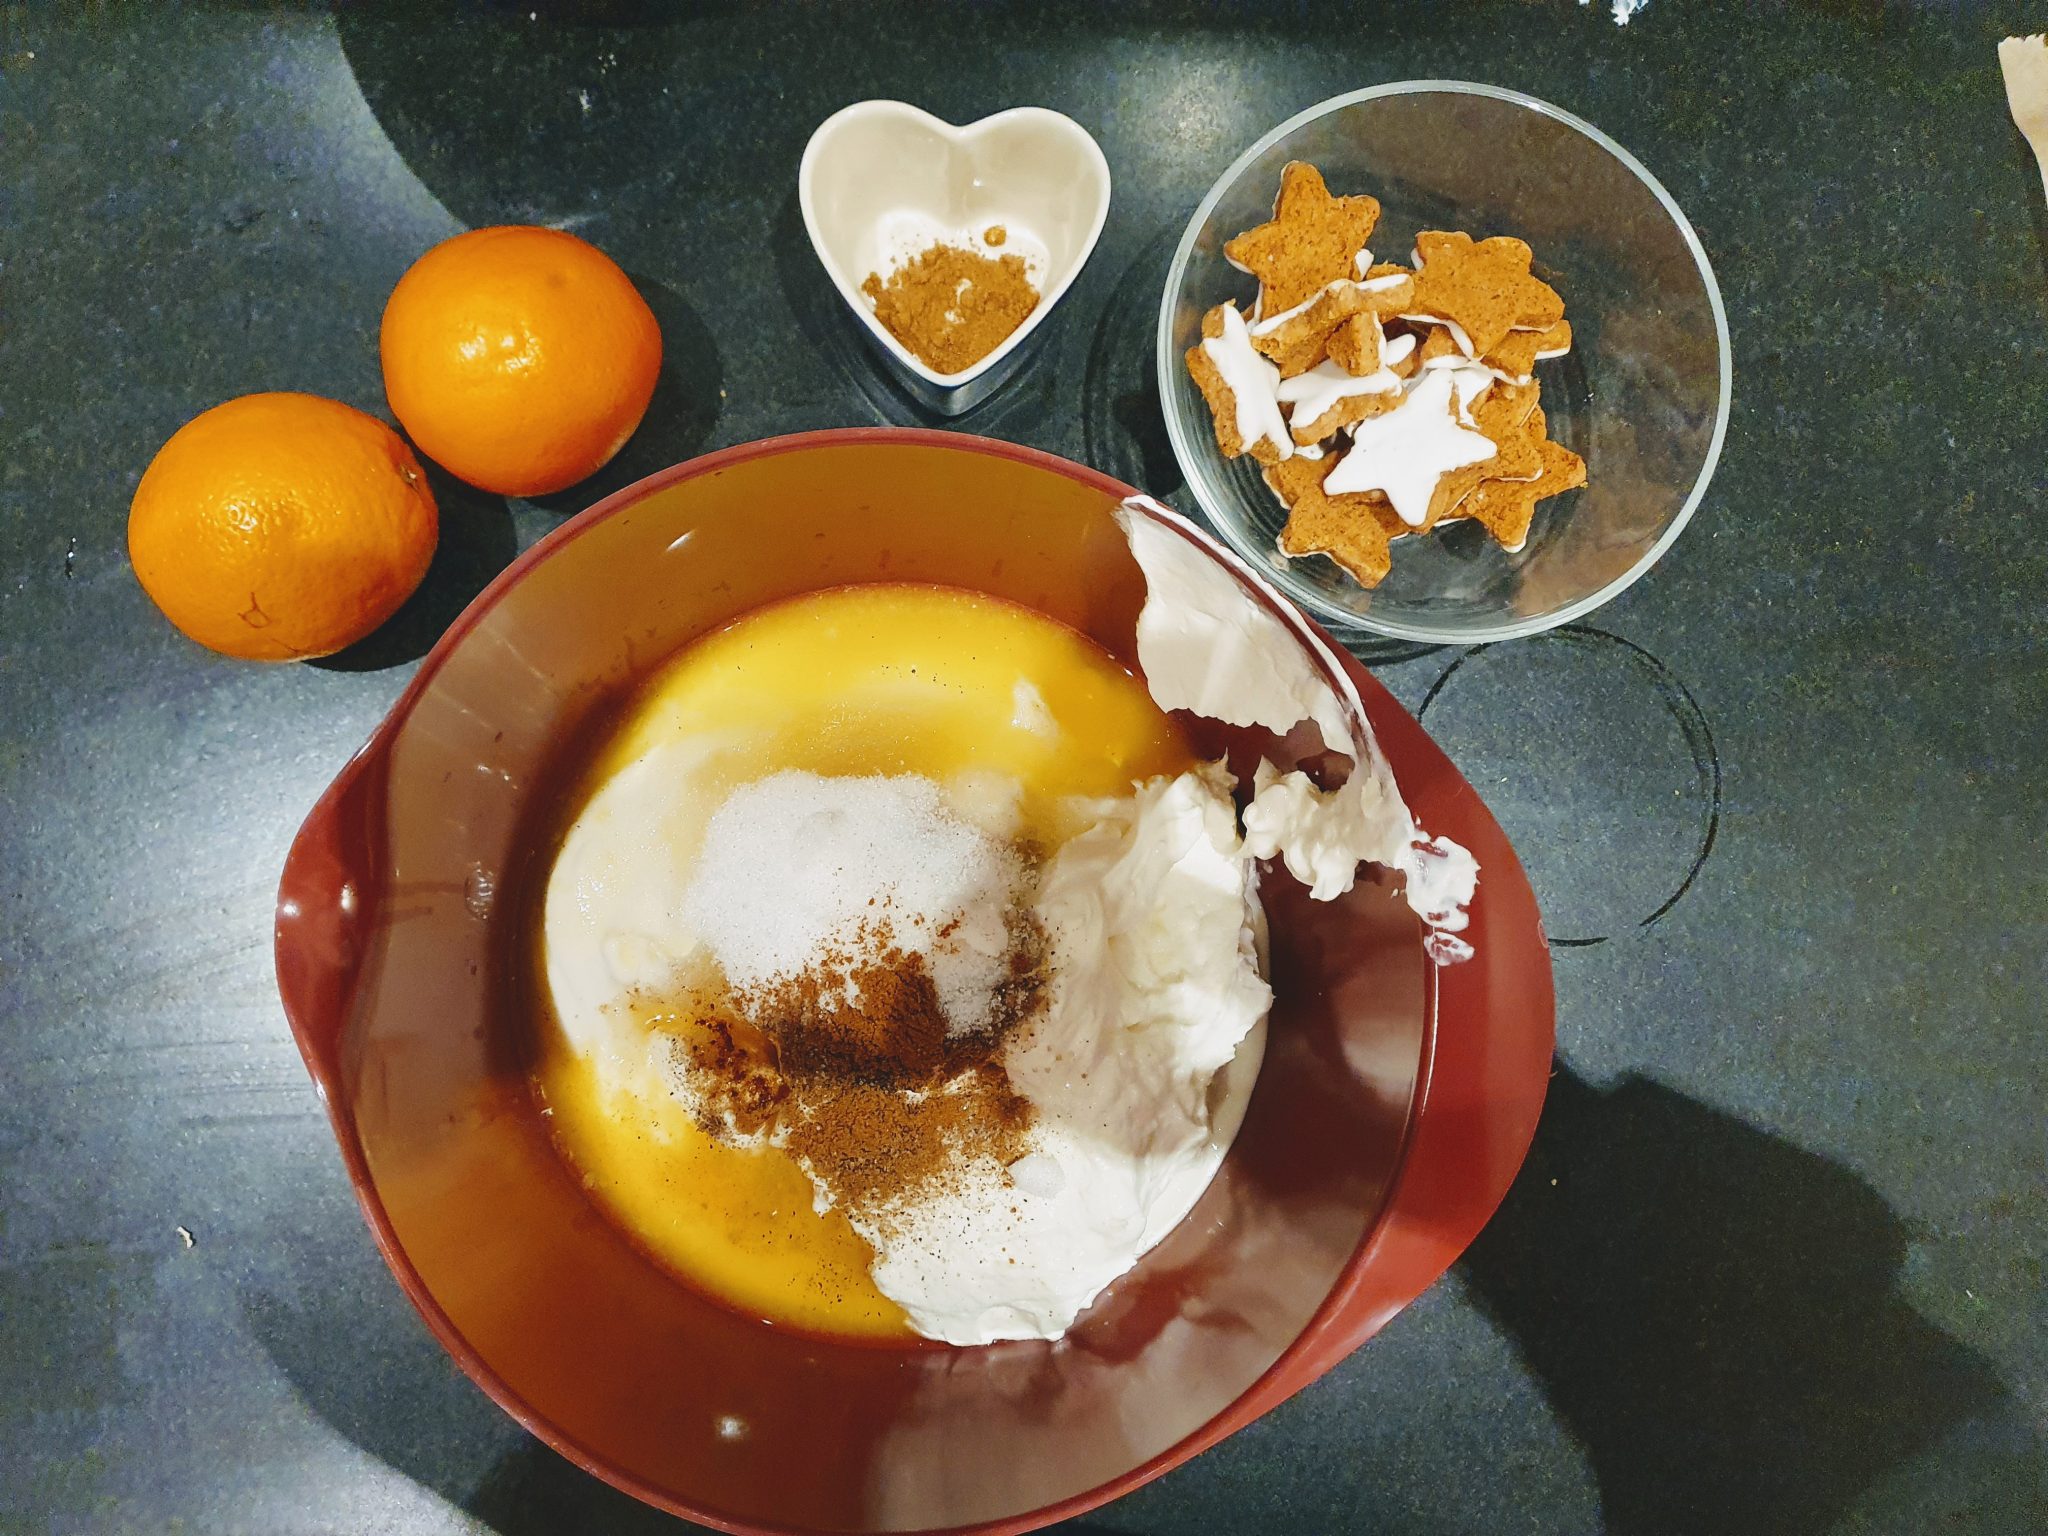 Frau-Mutter.com - Dessert für Weihnachten: Orangen-Mascarpone Creme